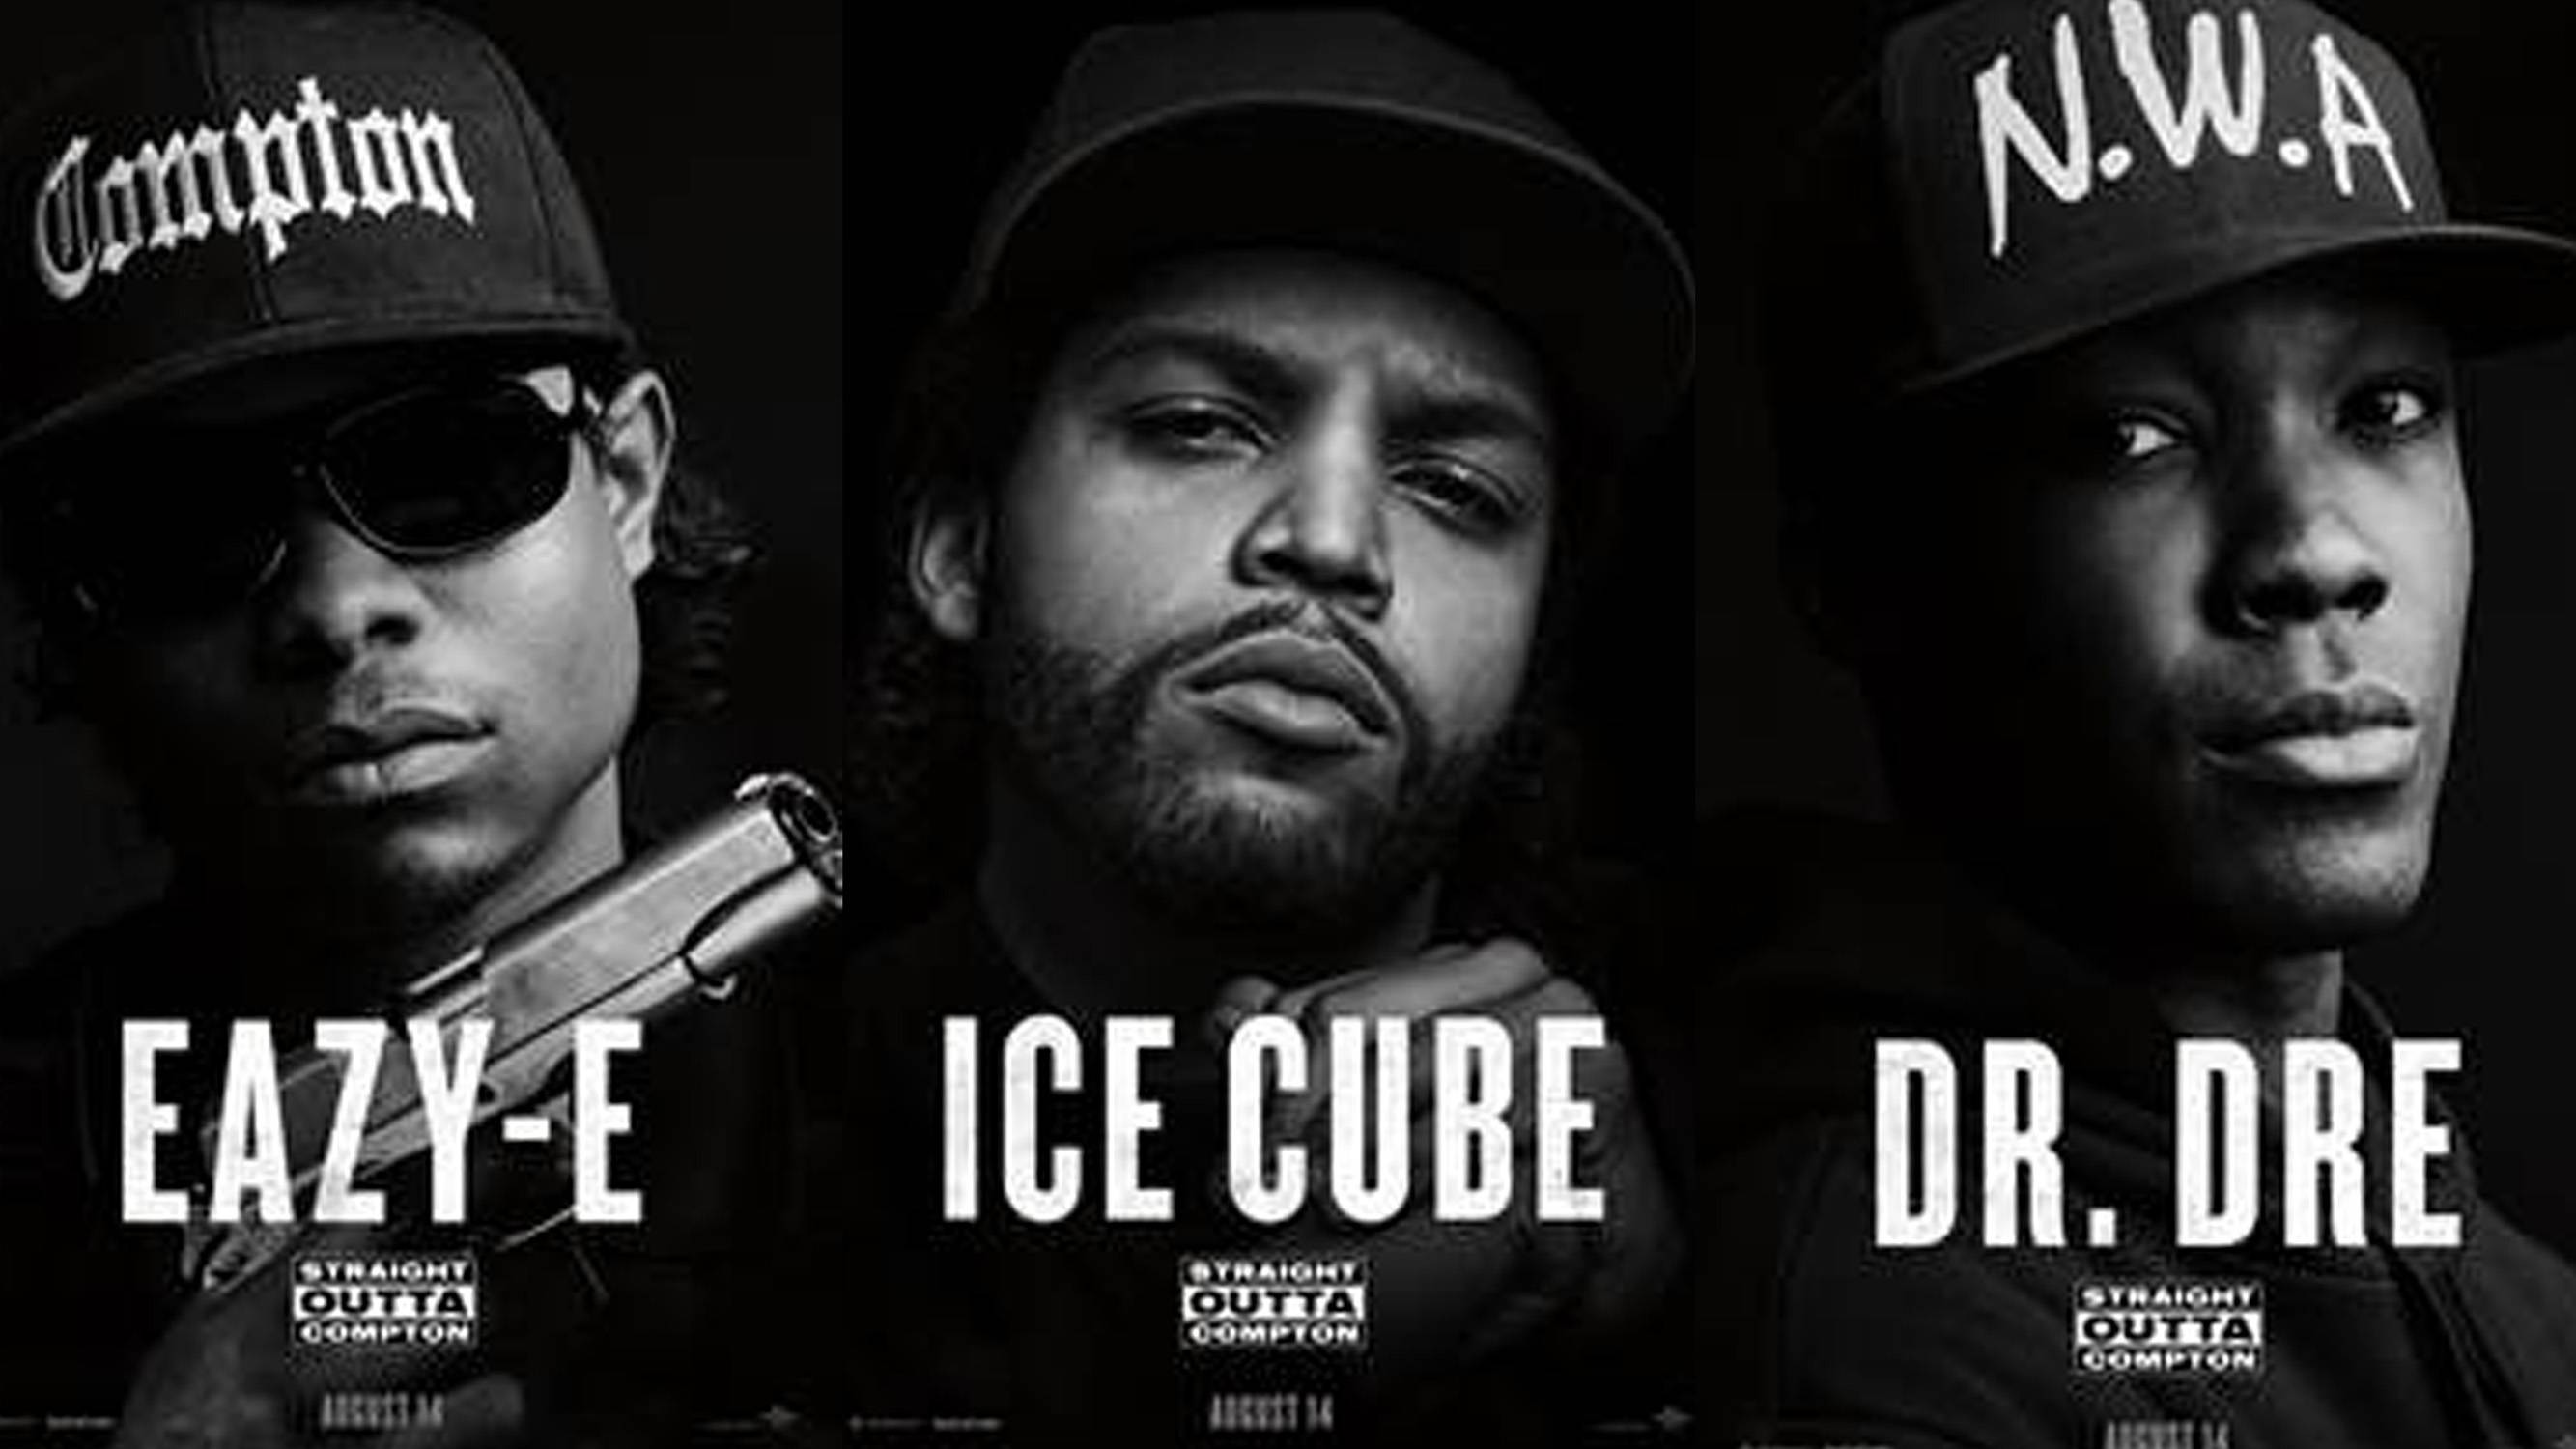 Ice cube текст. Dr Dre NWA. Ice Cube и Dr Dre. Dr Dre Ice Cube Eazy-e группа. Ice Cube NWA.